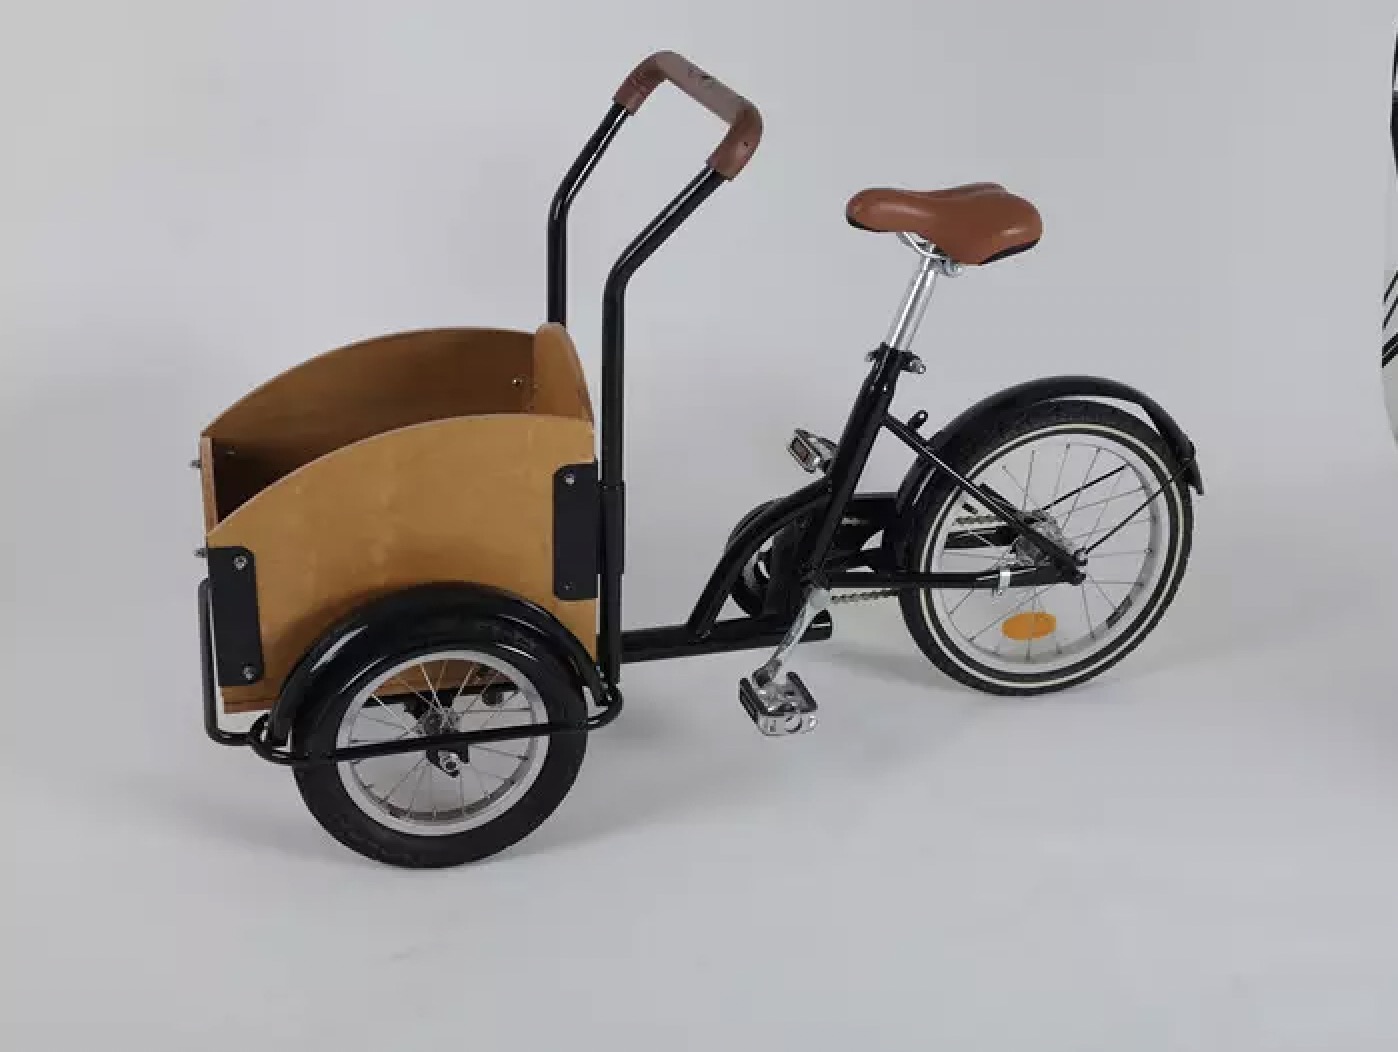 מחסן אירופה אופני ילדים 3 גלגלים אופני מטען לילדים צעצועים אופני איזון trike